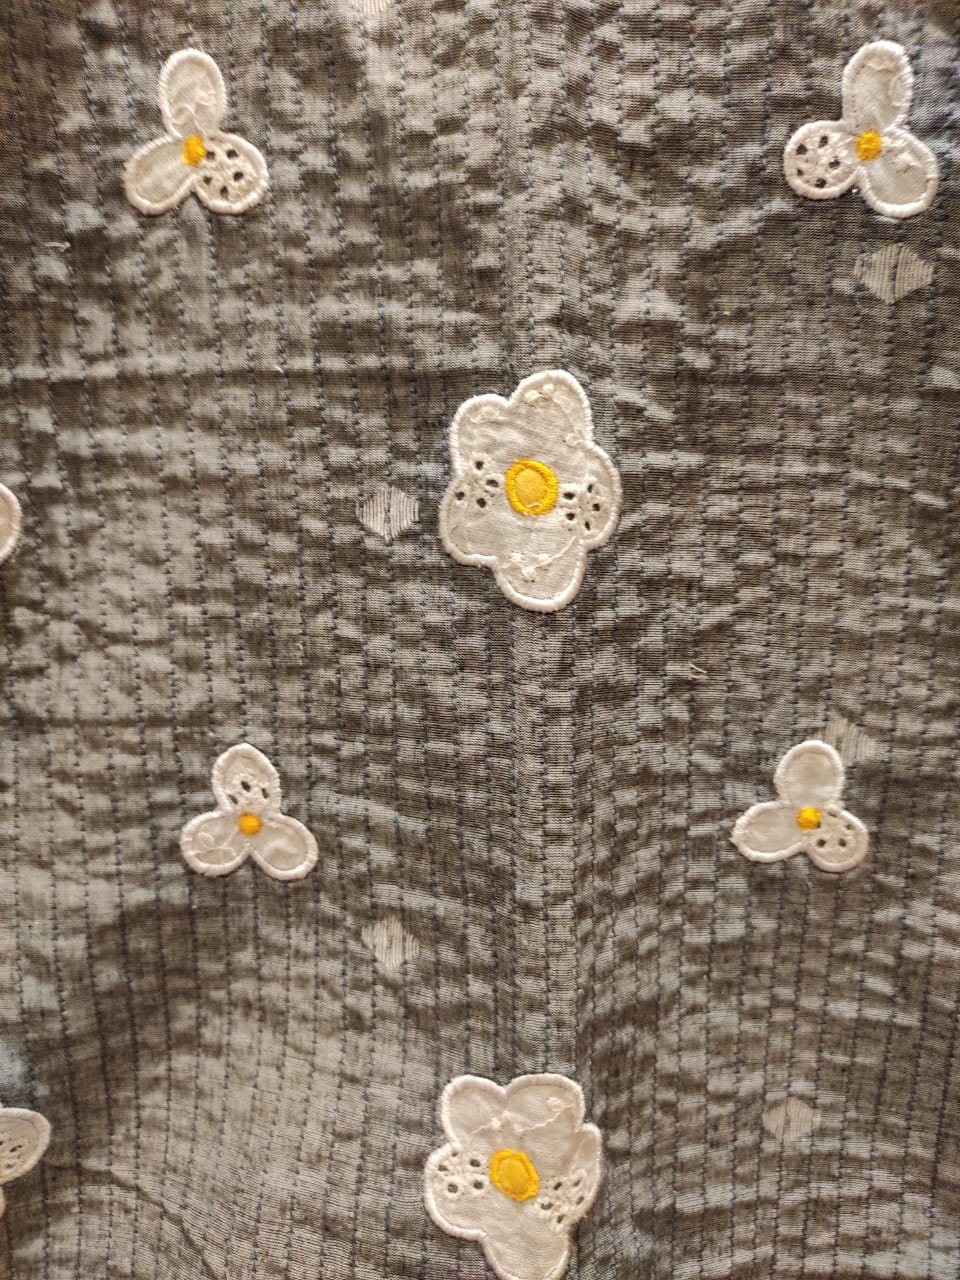 Poached egg flower jacket